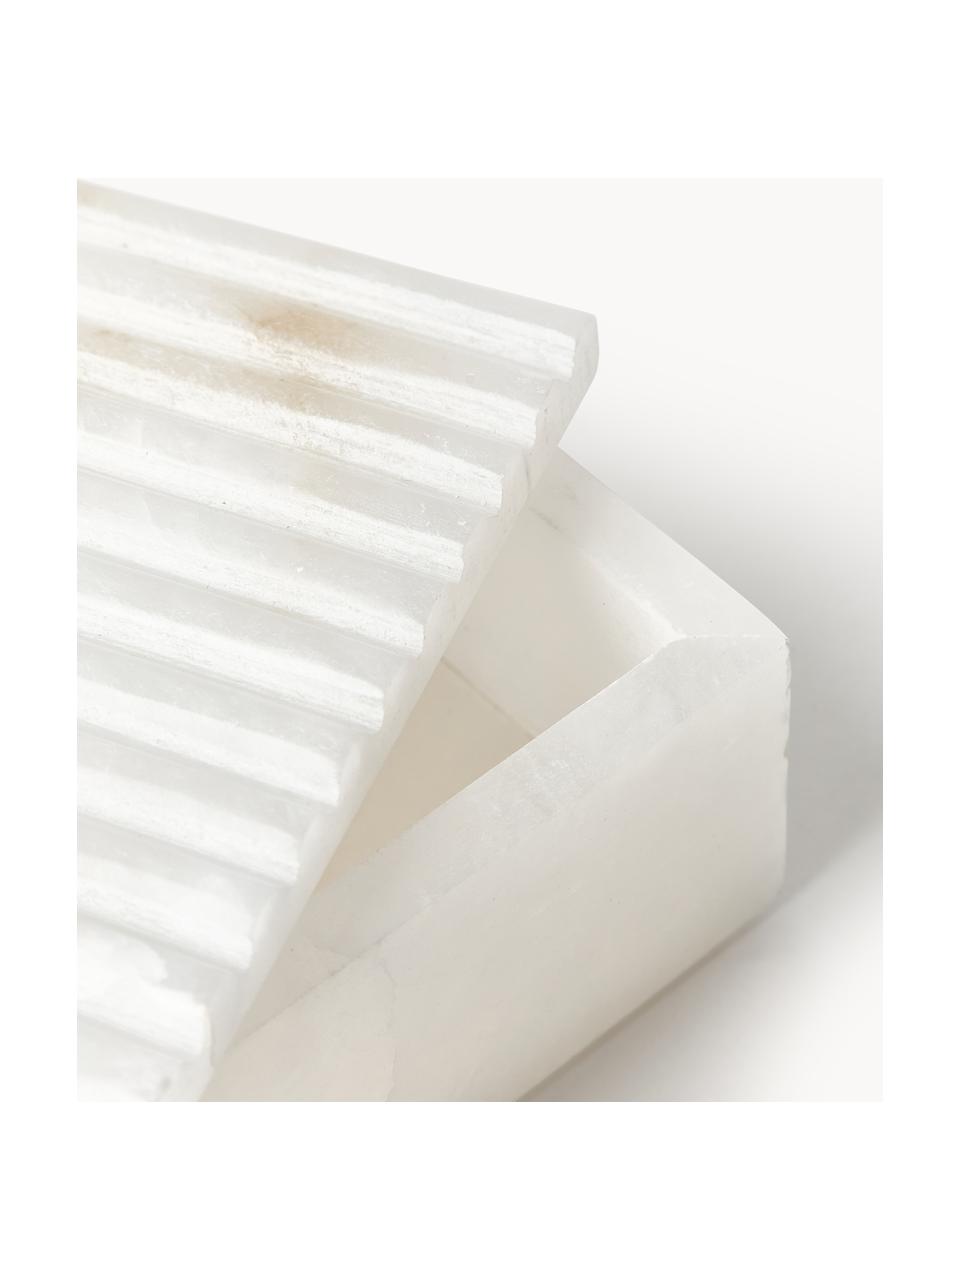 Aufbewahrungsbox Jutta mit geriffeltem Deckel, Alabaster, Weiß, B 10 x L 15 cm